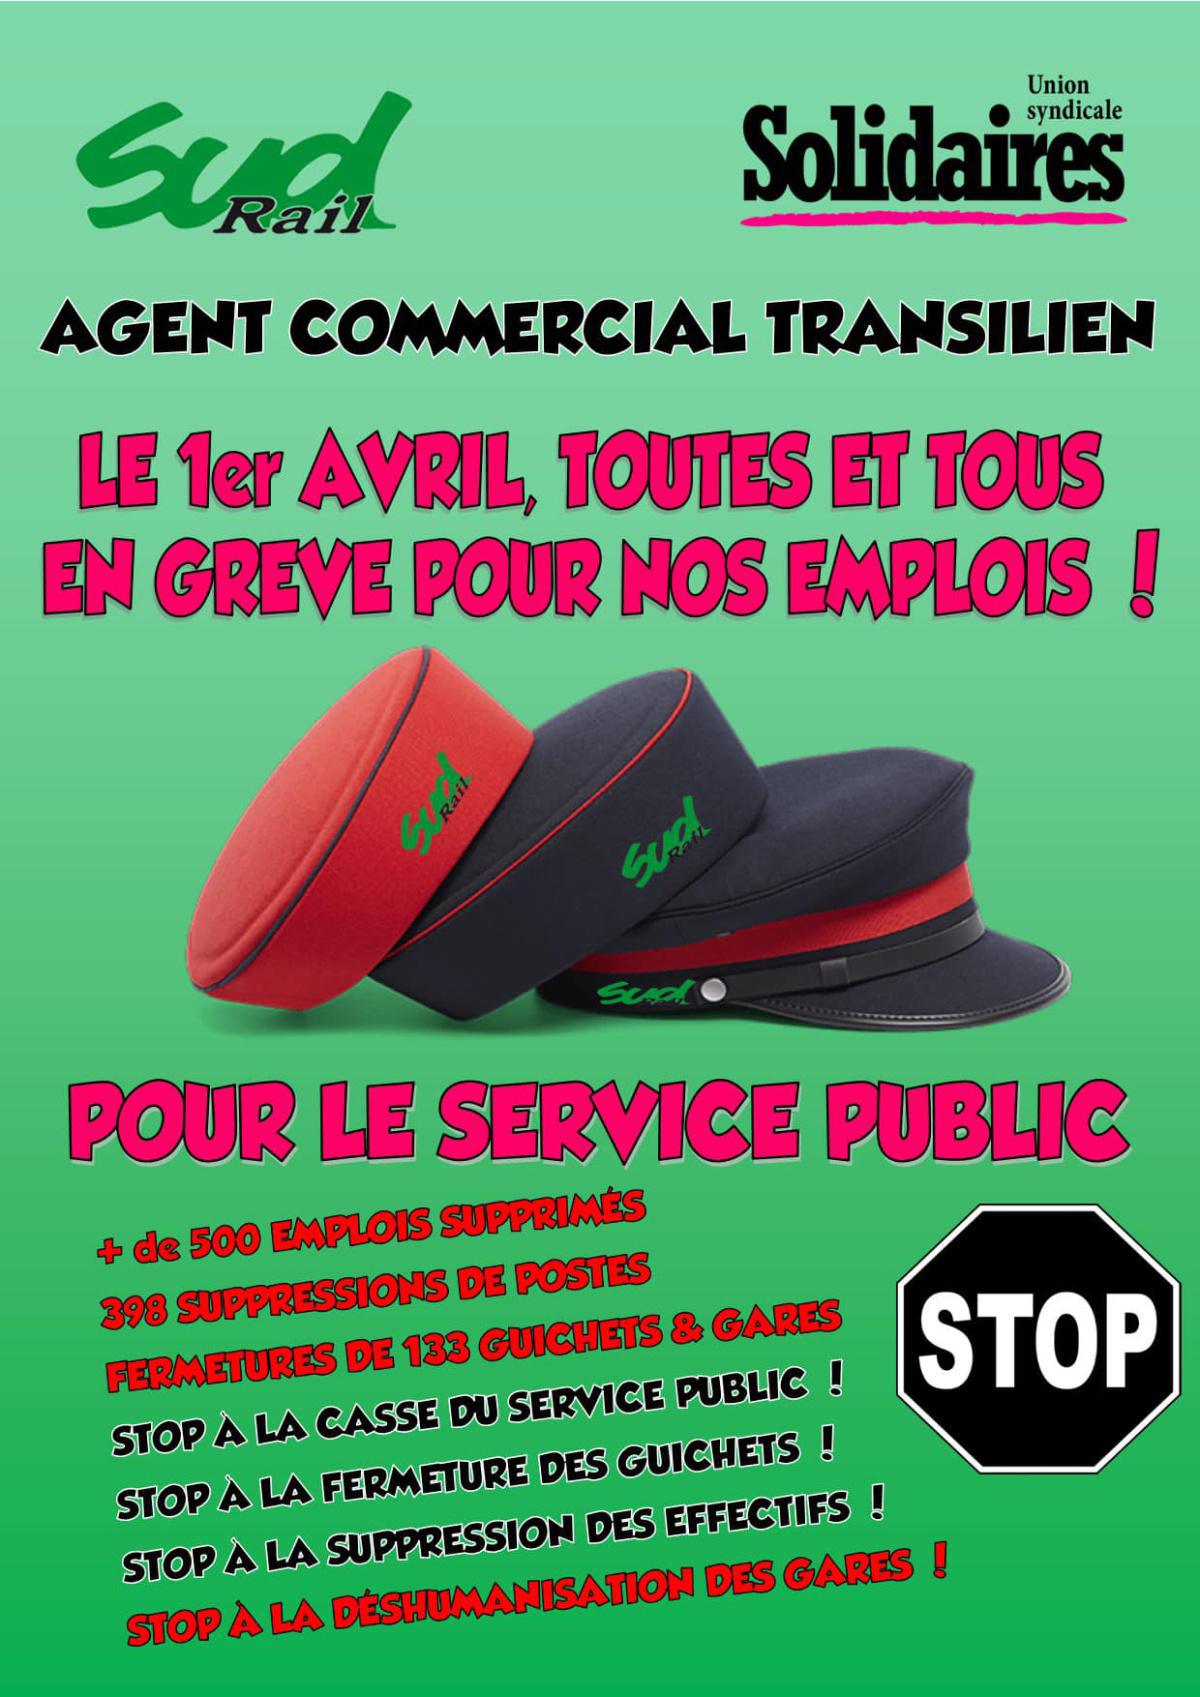 Grève IdF - Pour le service public, stop à la déshumanisation des gares !